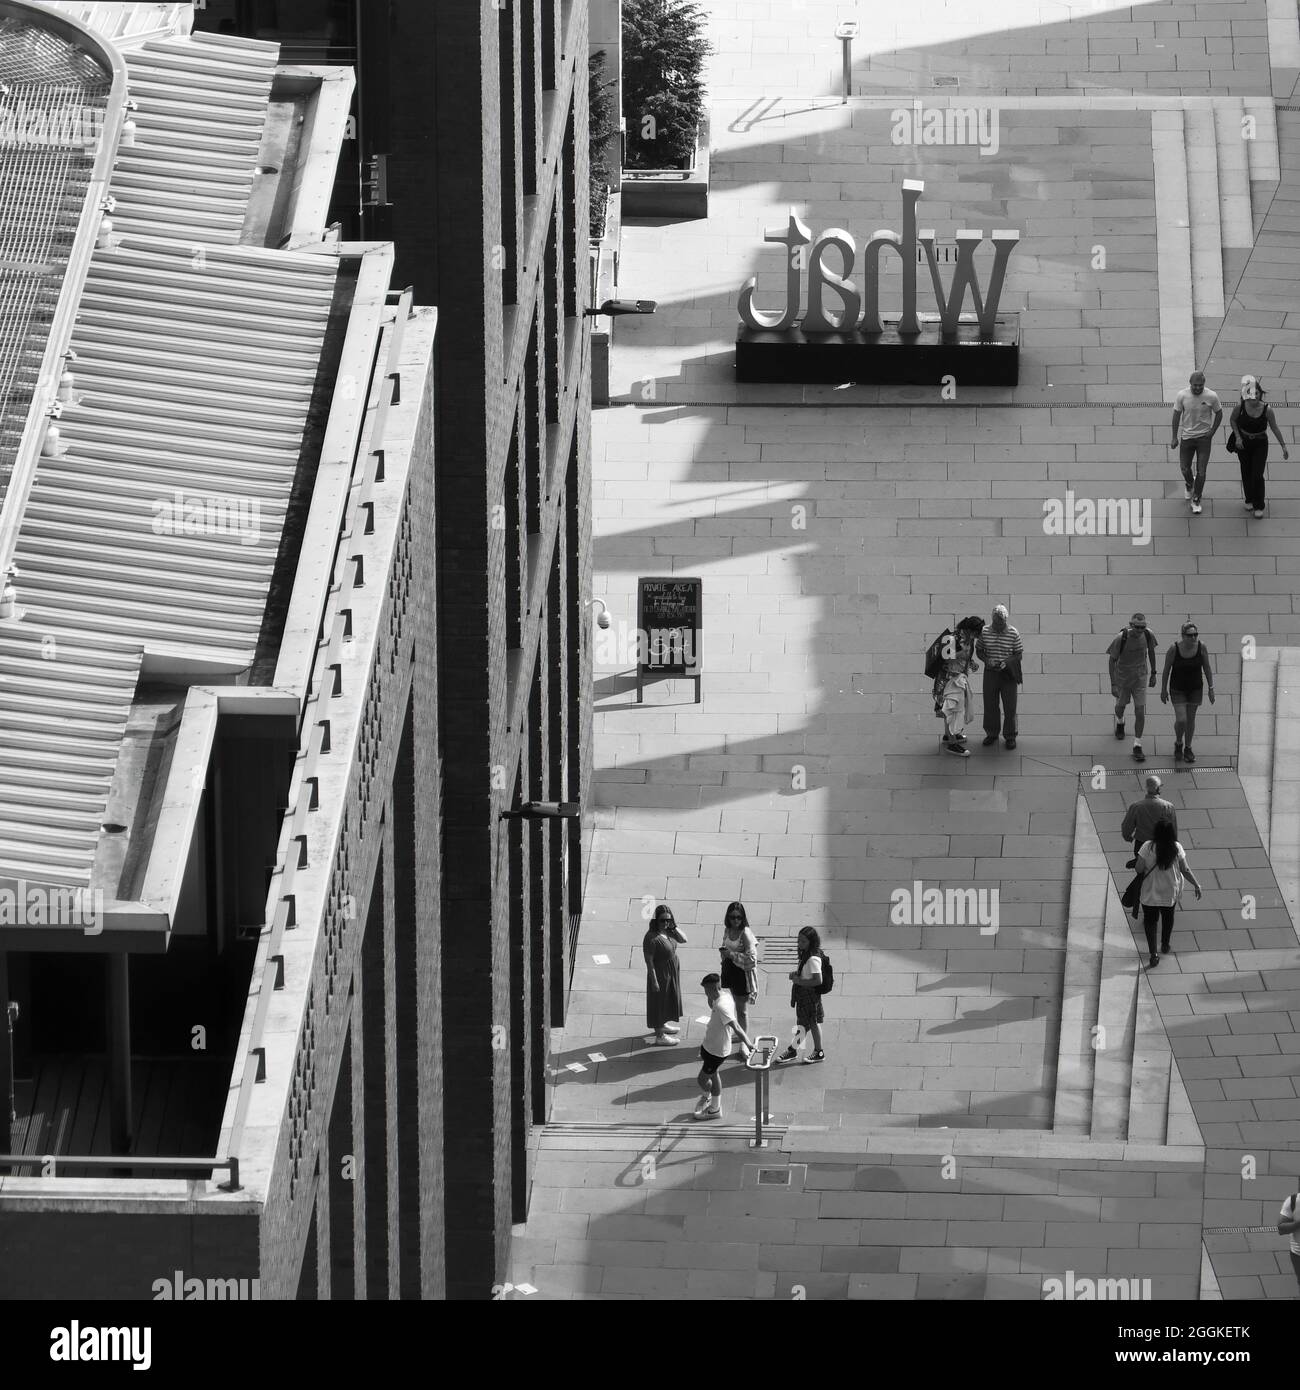 Antenna monocromatica di persone che camminano e socializzano su un passaggio pedonale vicino alla Cattedrale di San Paolo. Foto Stock